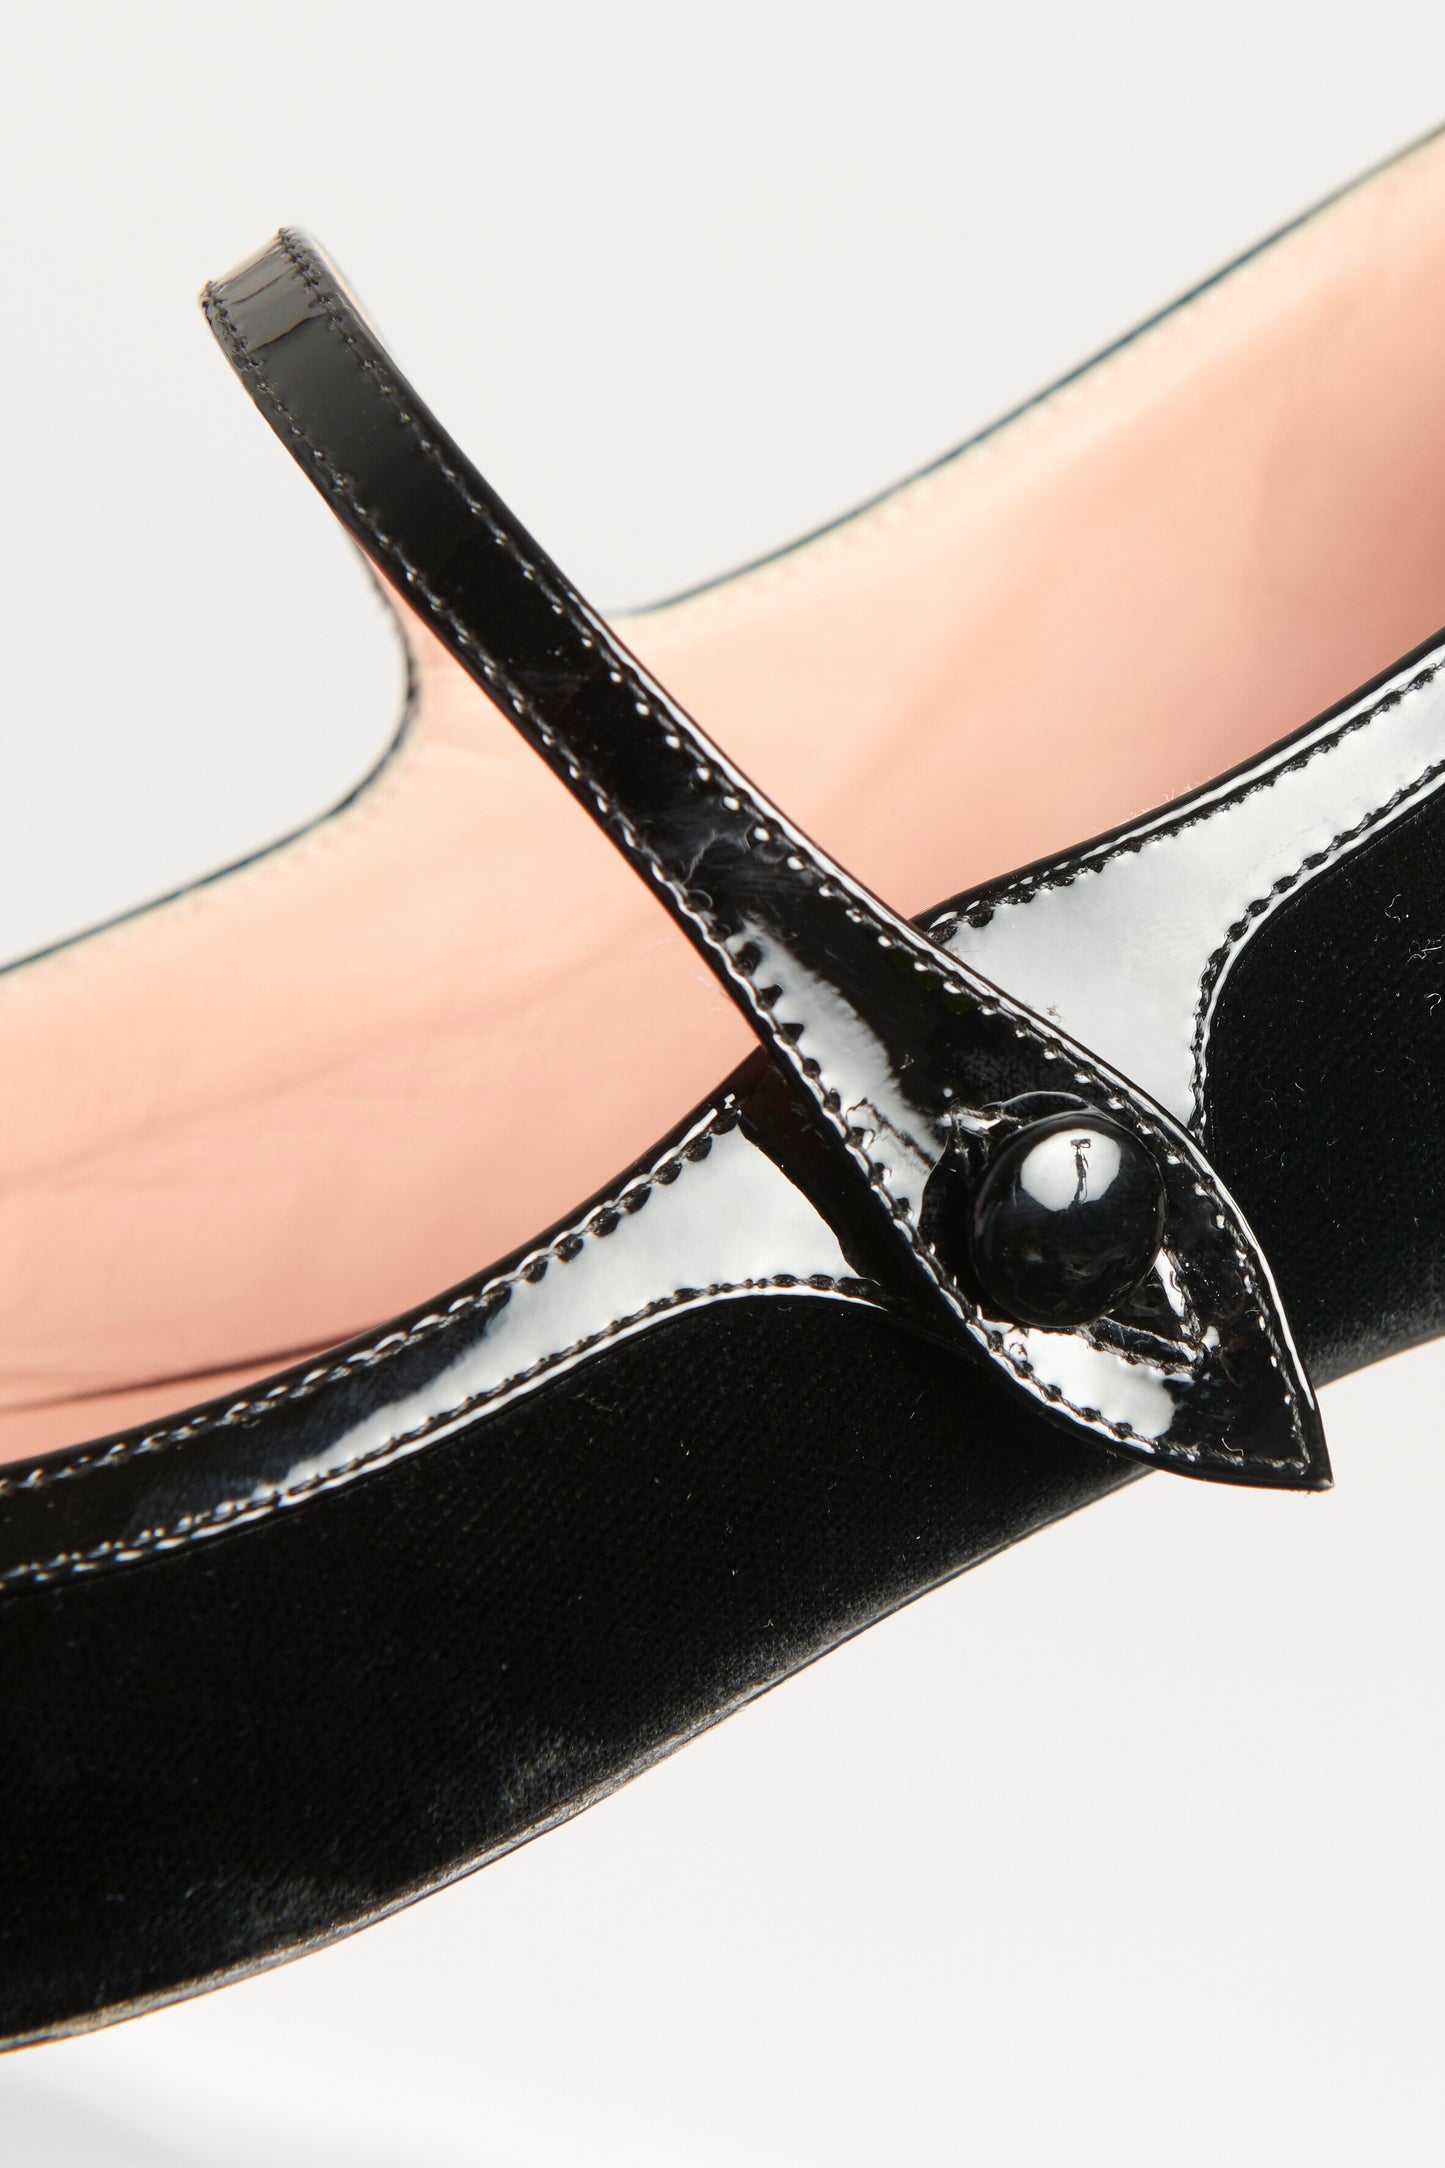 Black Velvet Preowned Pointed Toe Flats